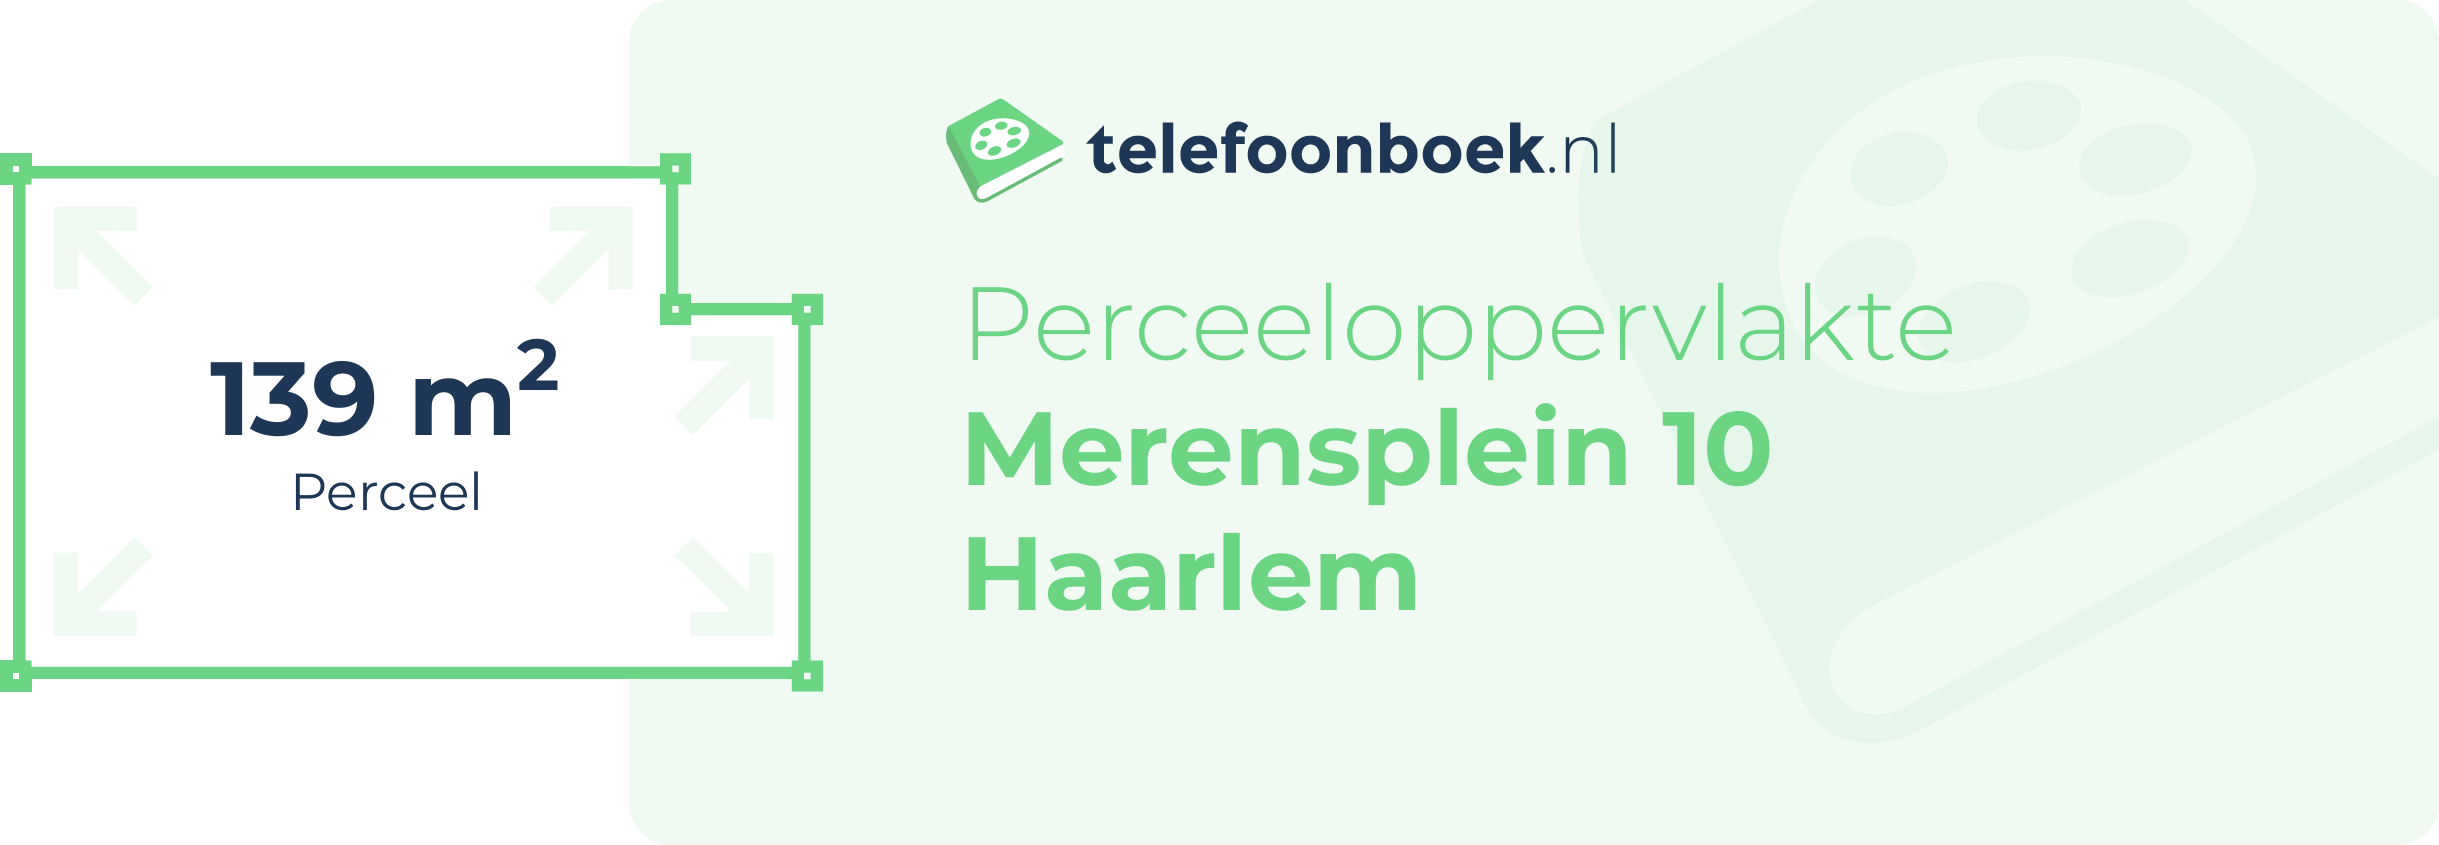 Perceeloppervlakte Merensplein 10 Haarlem